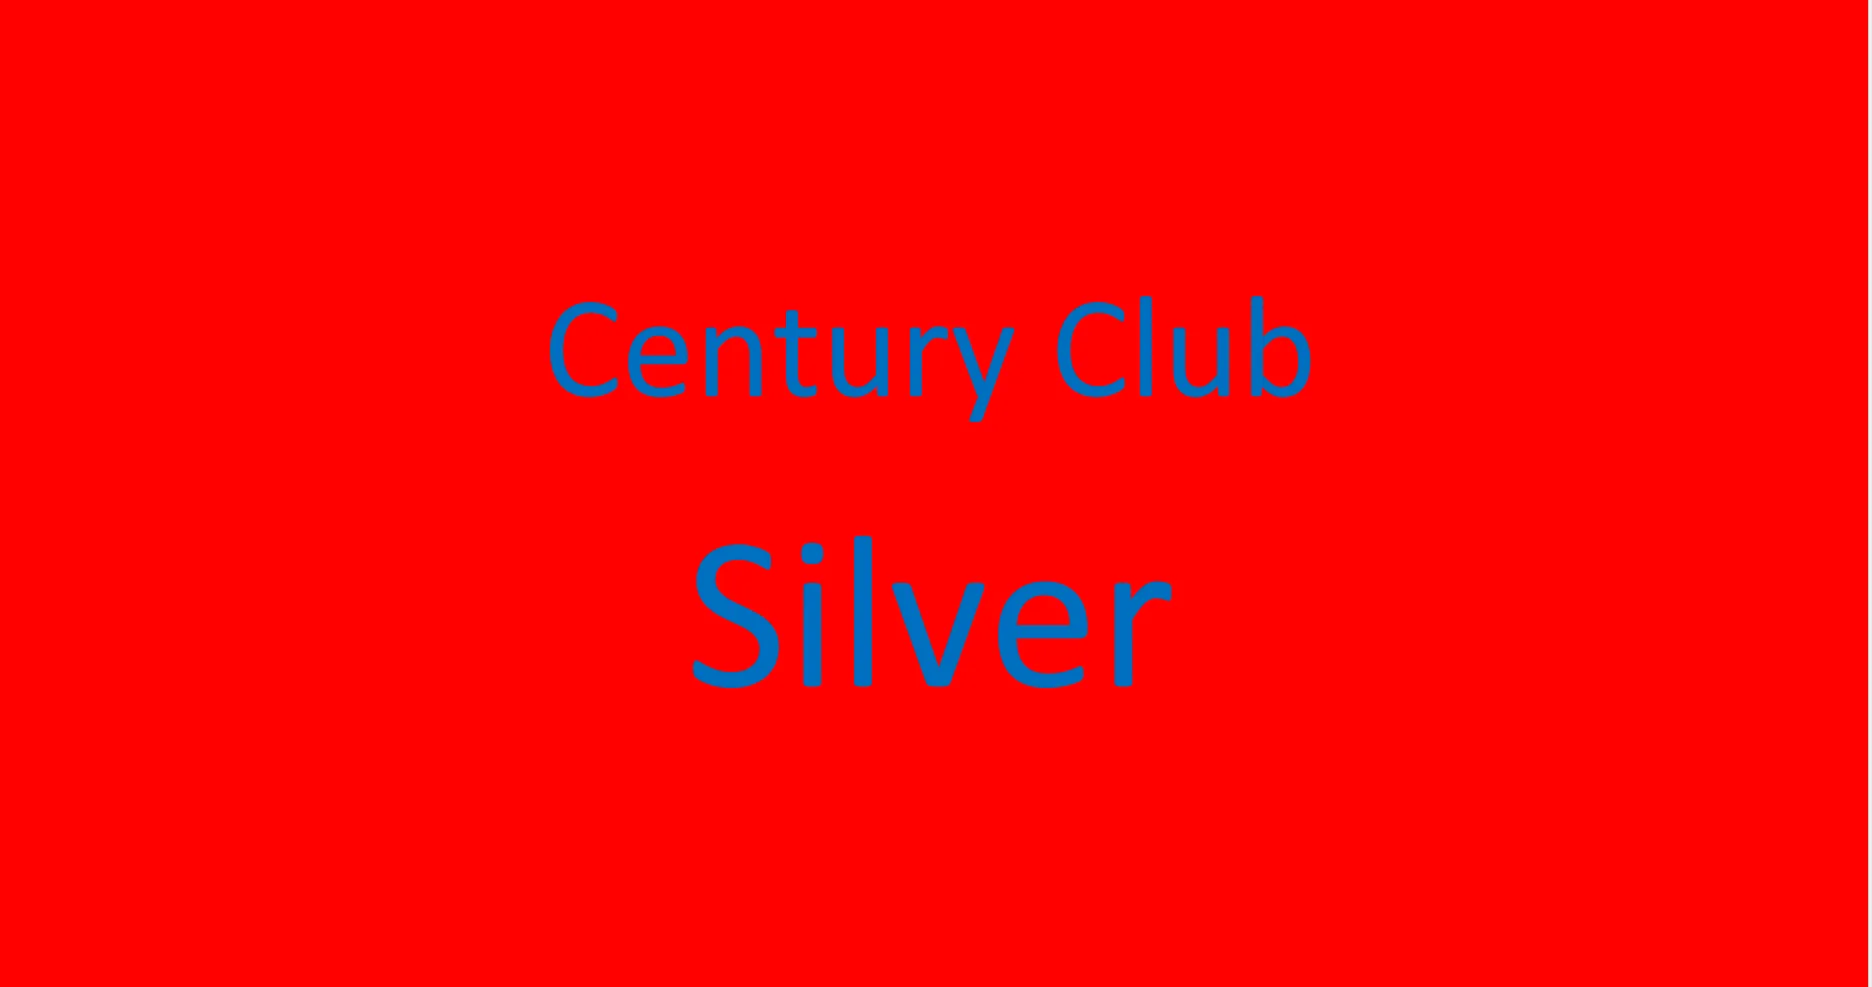 Century Club Silver 